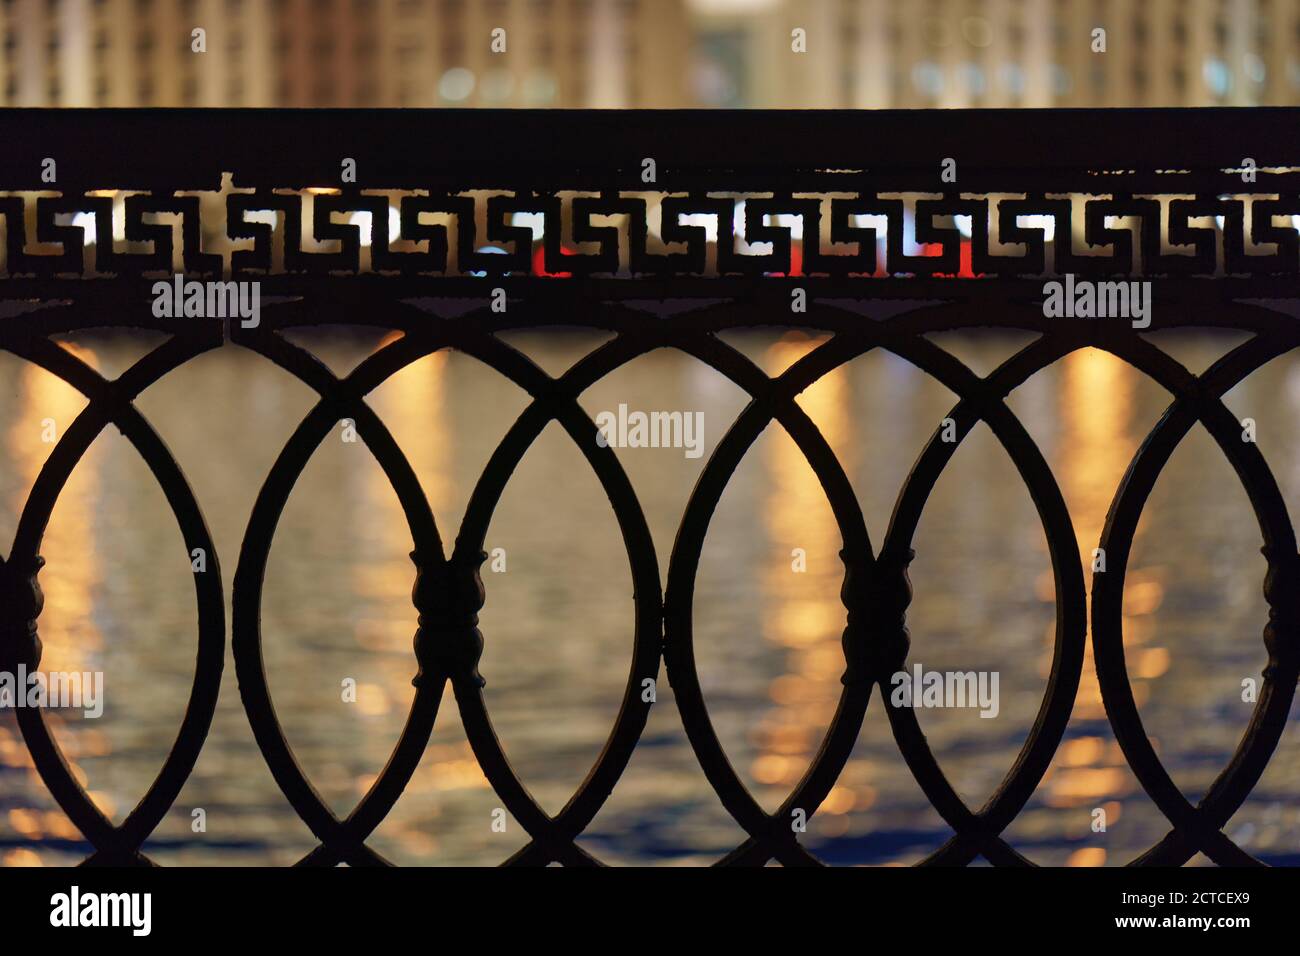 Vue sur la rivière Moskva, réflexions de la ville au bord de l'eau à travers la clôture métallique. Concept de la beauté de la ville de Moscou dans la nuit. Bâtiments sur la r Banque D'Images